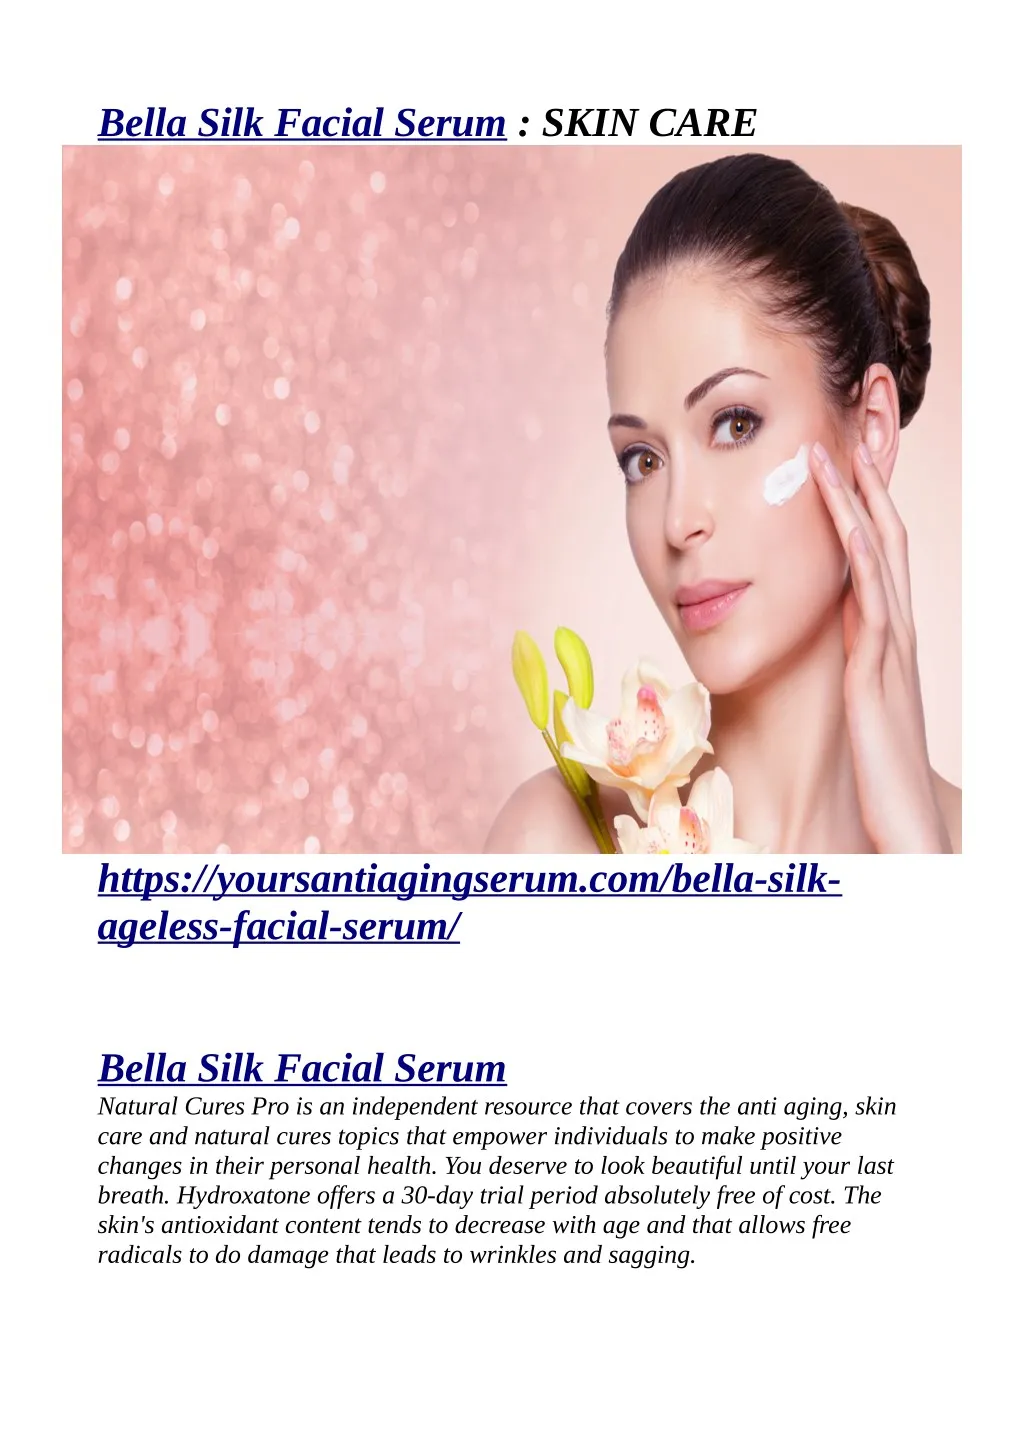 bella silk facial serum skin care